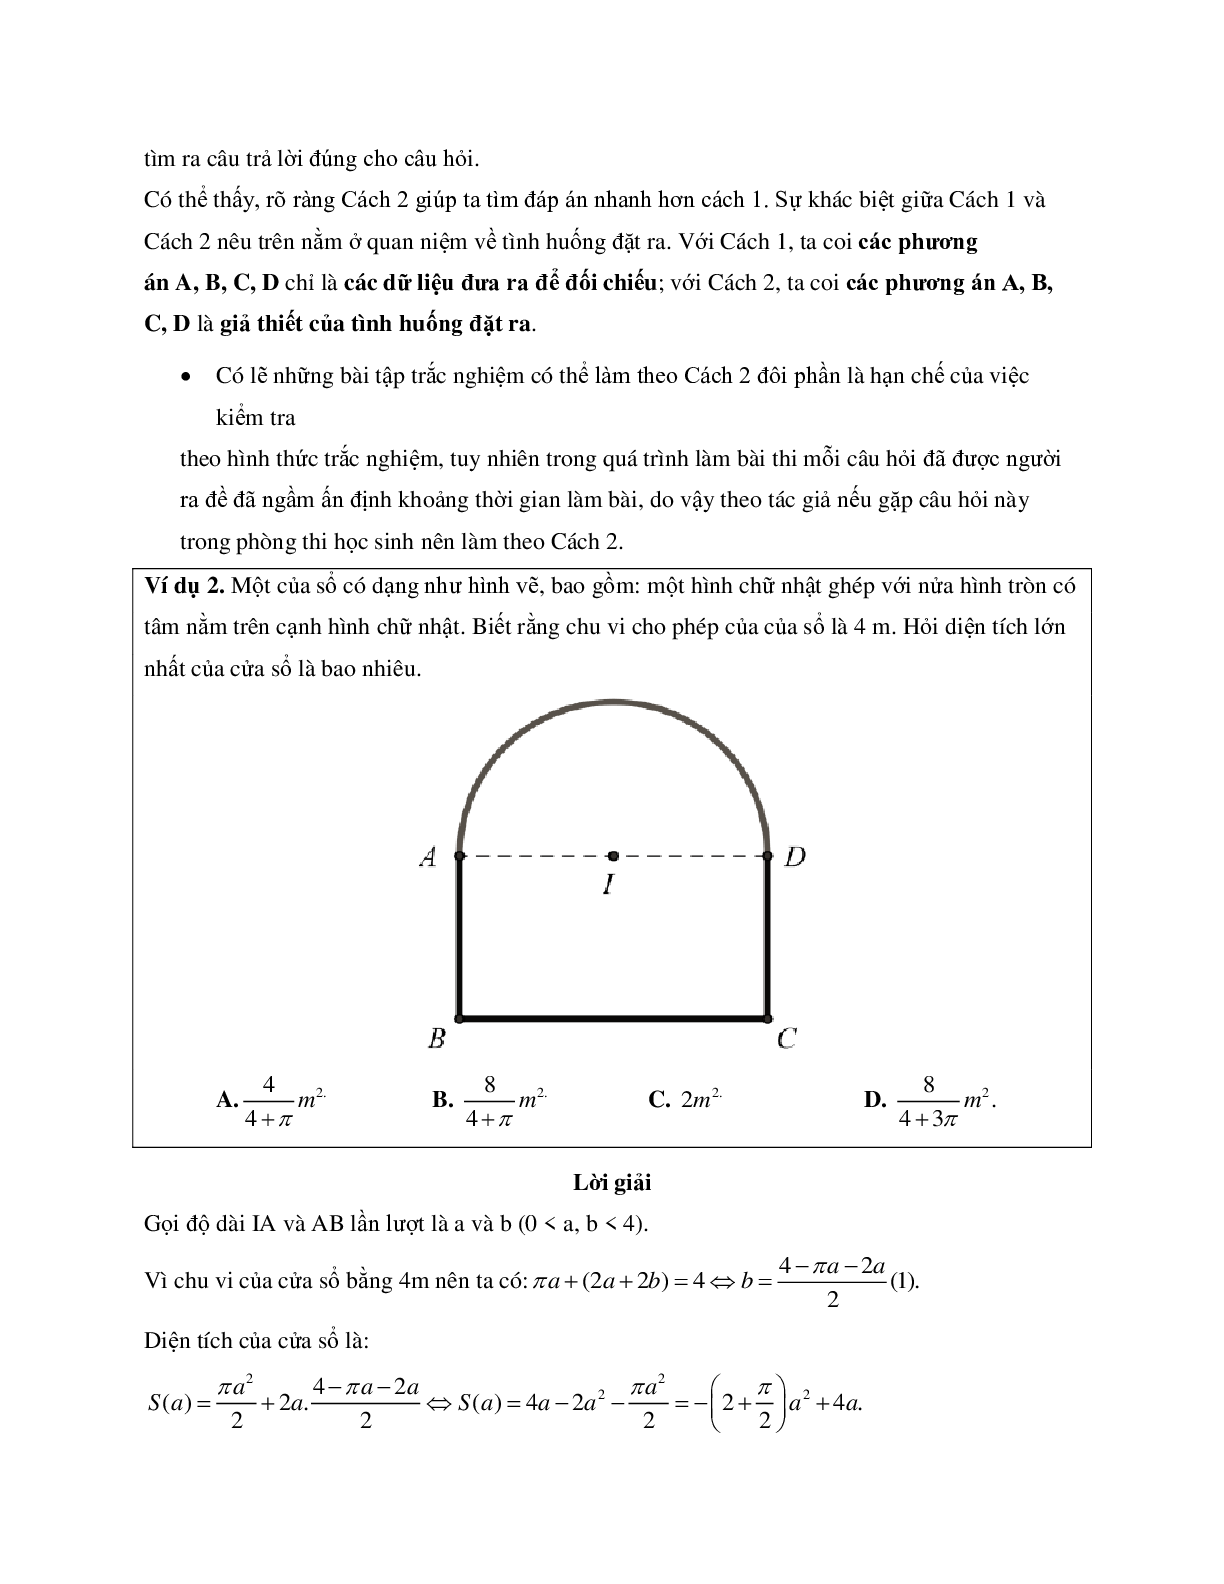 83 bài toán thực tế liên quan đến hình học có đáp án (trang 6)